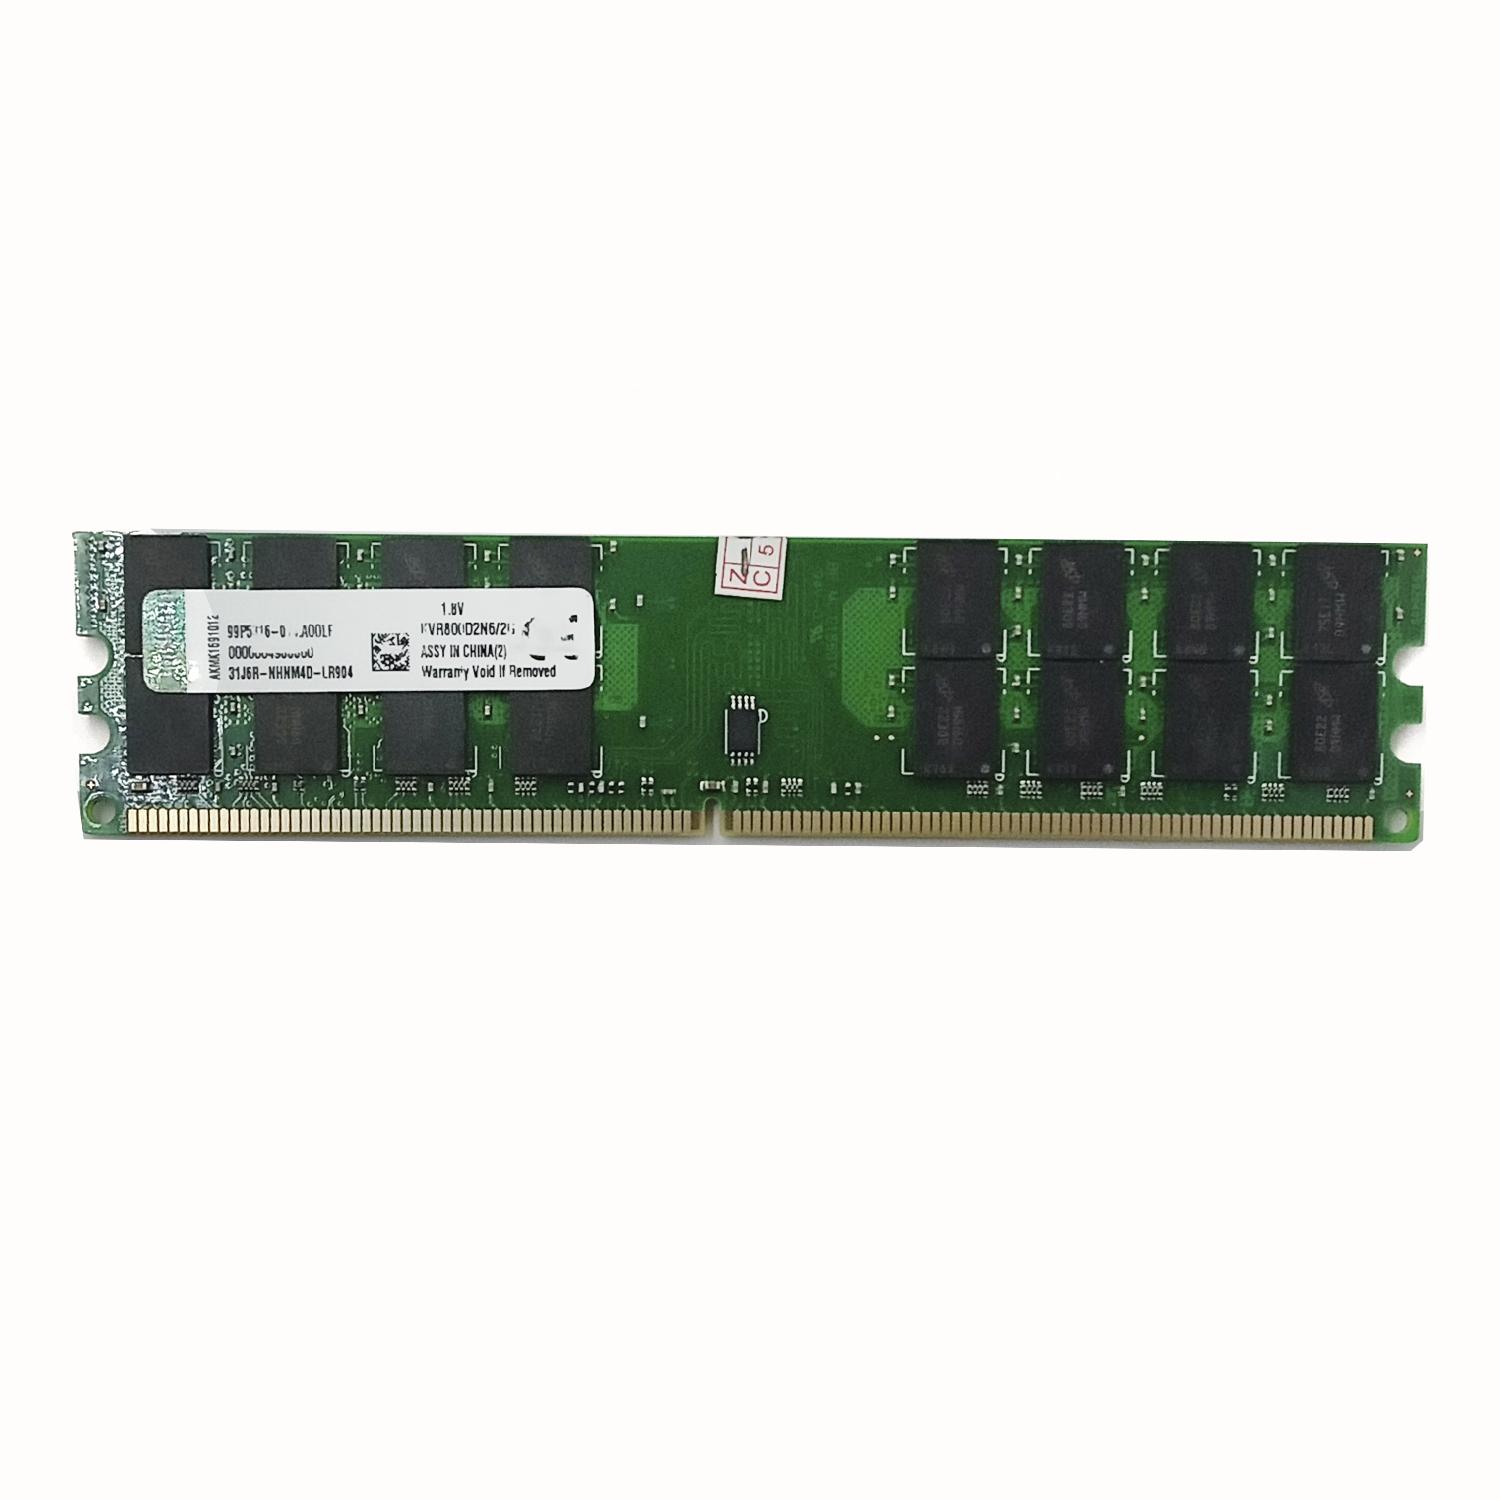 Оперативная память Kingston KVR800D2N6/2G DDR2 2гб б/у